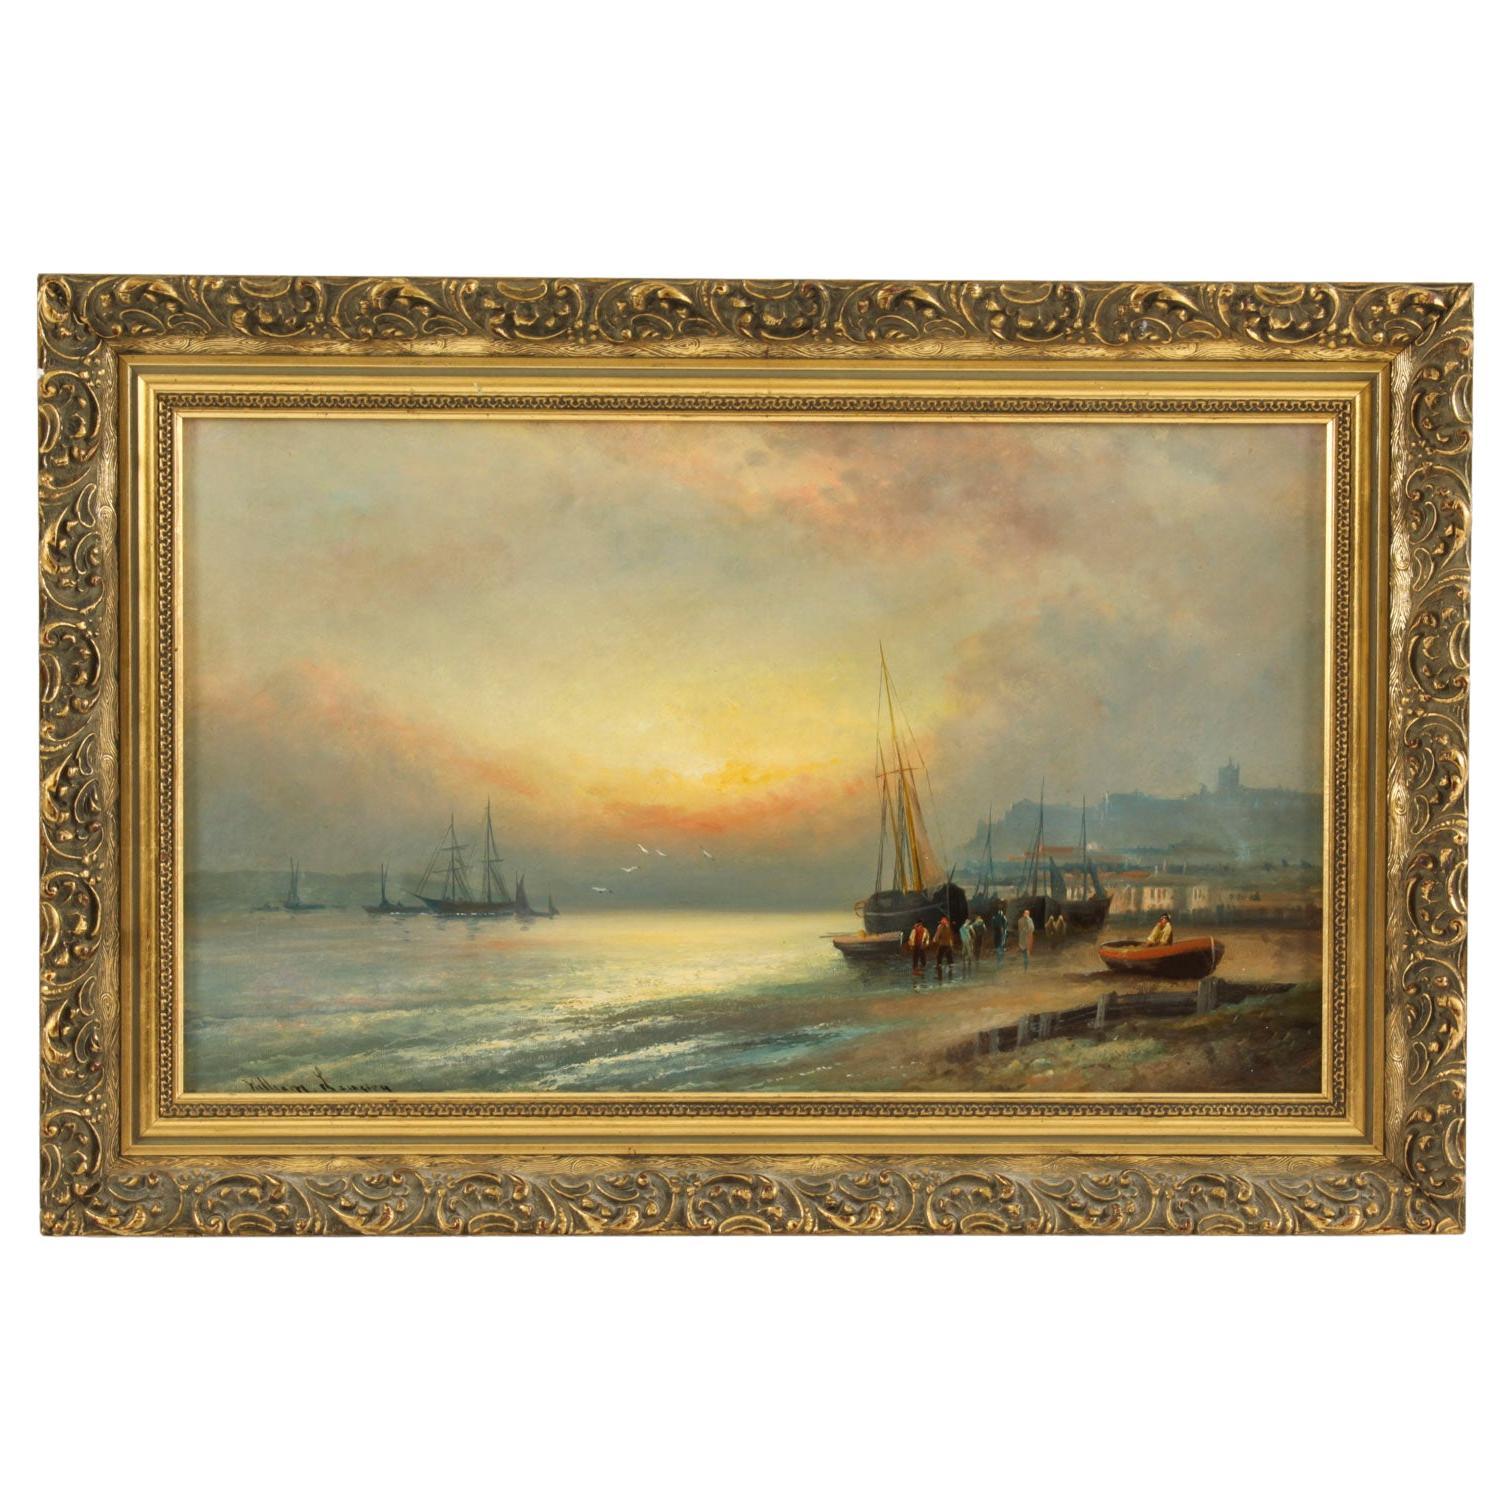 Peinture ancienne « Sunset at Low Tide » de William Langley du 19ème siècle